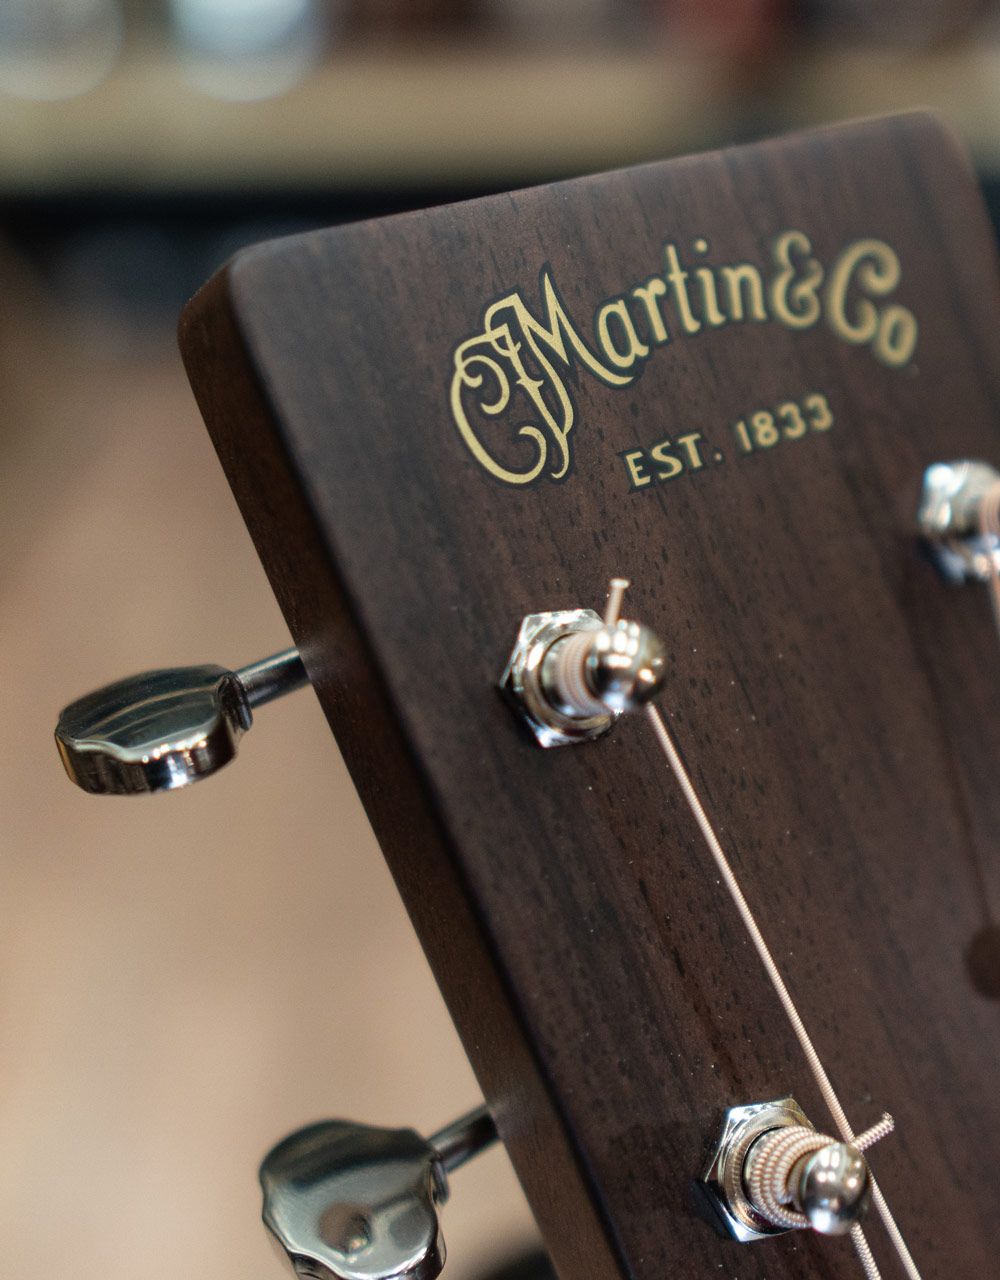 Акустическая гитара Martin D-28 - купить в "Гитарном Клубе"